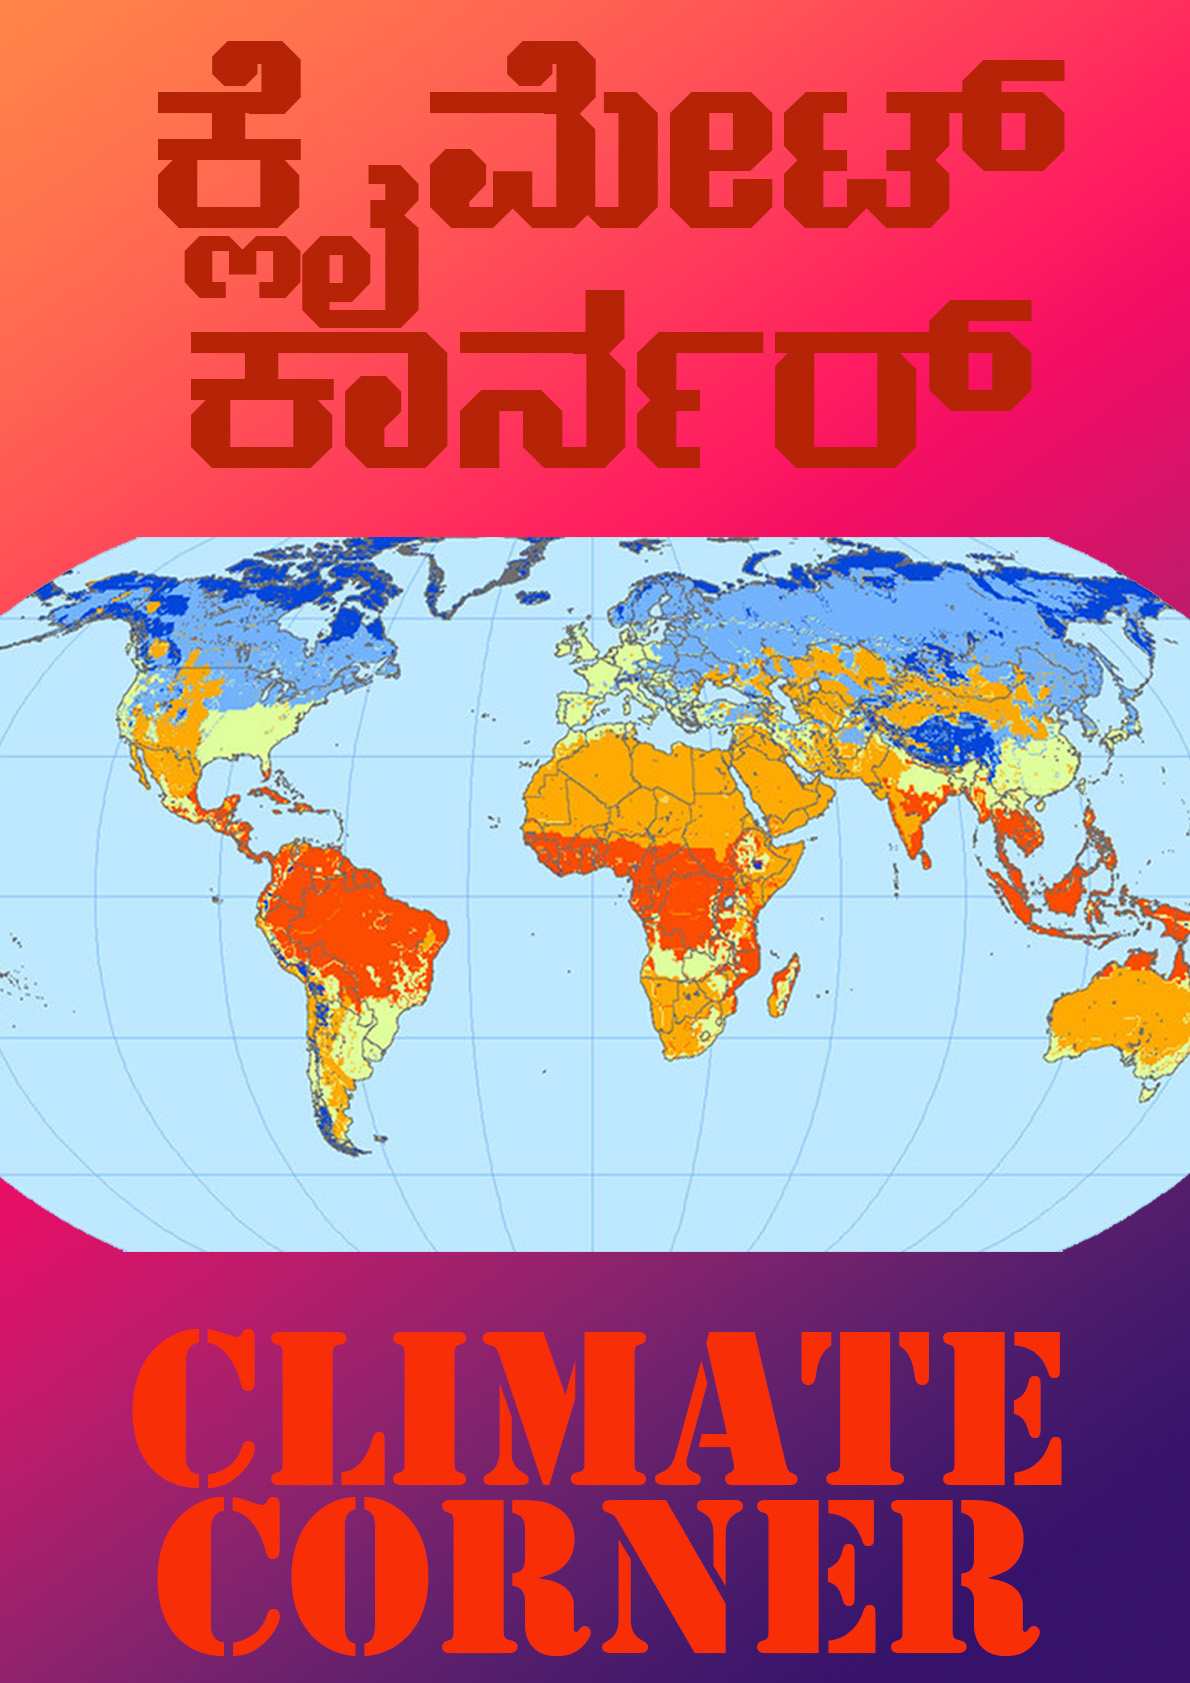 Climate Carner Image